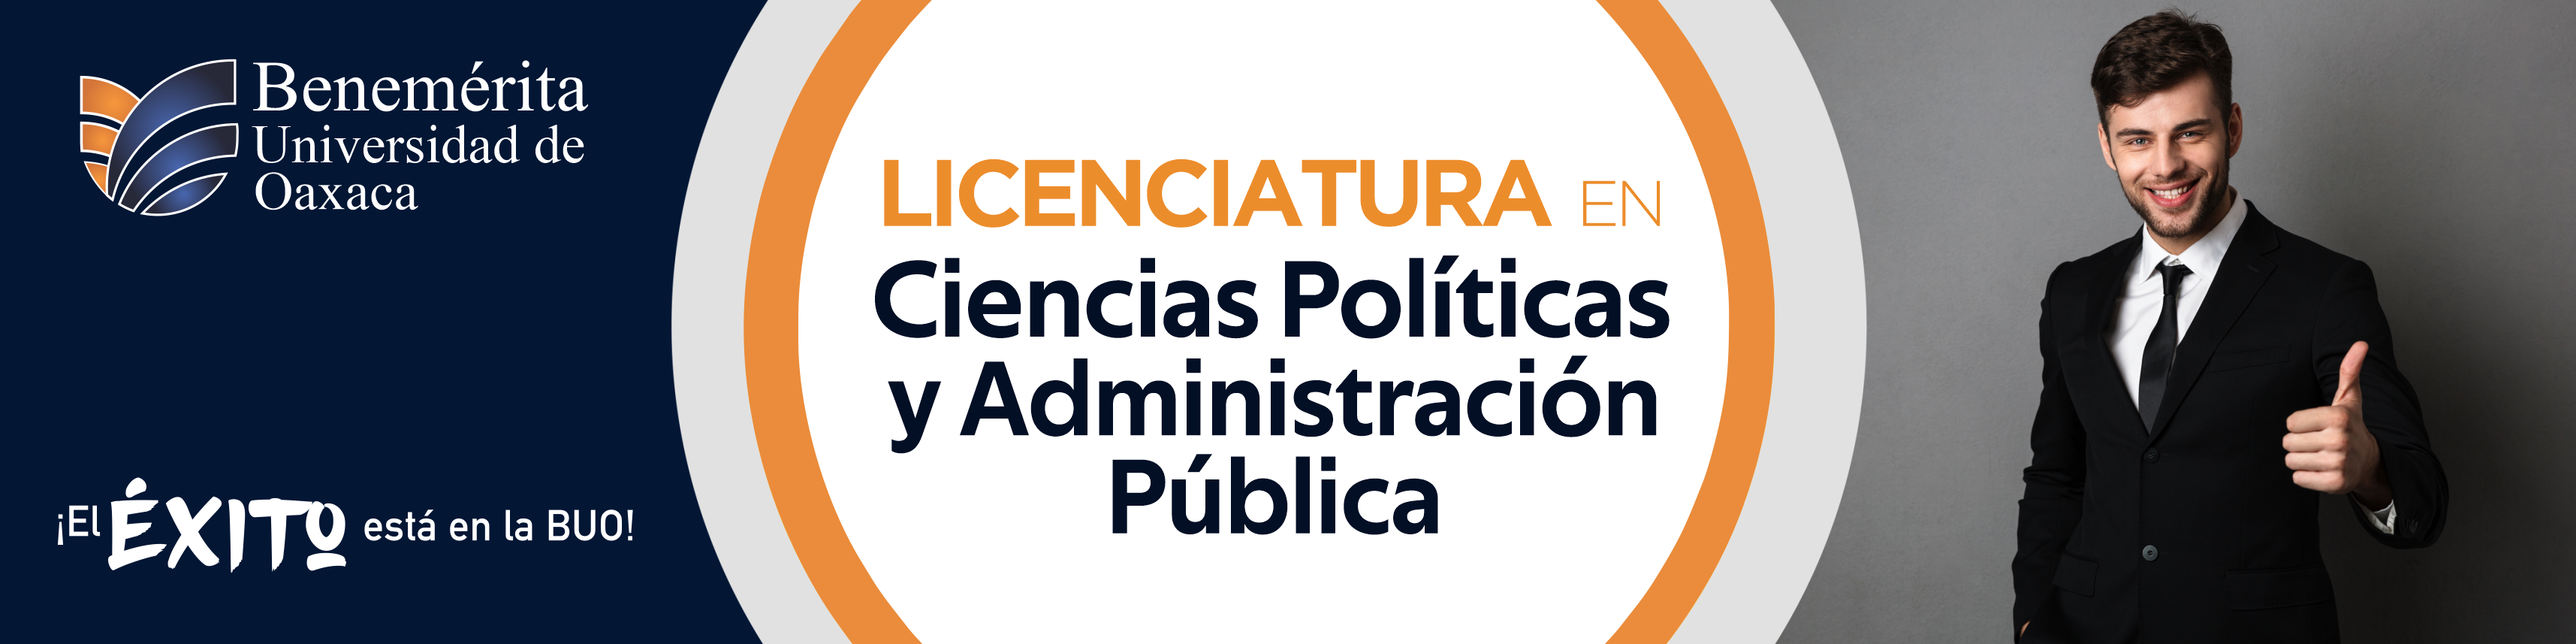 Licenciatura en Ciencias Políticas y Administración Pública 